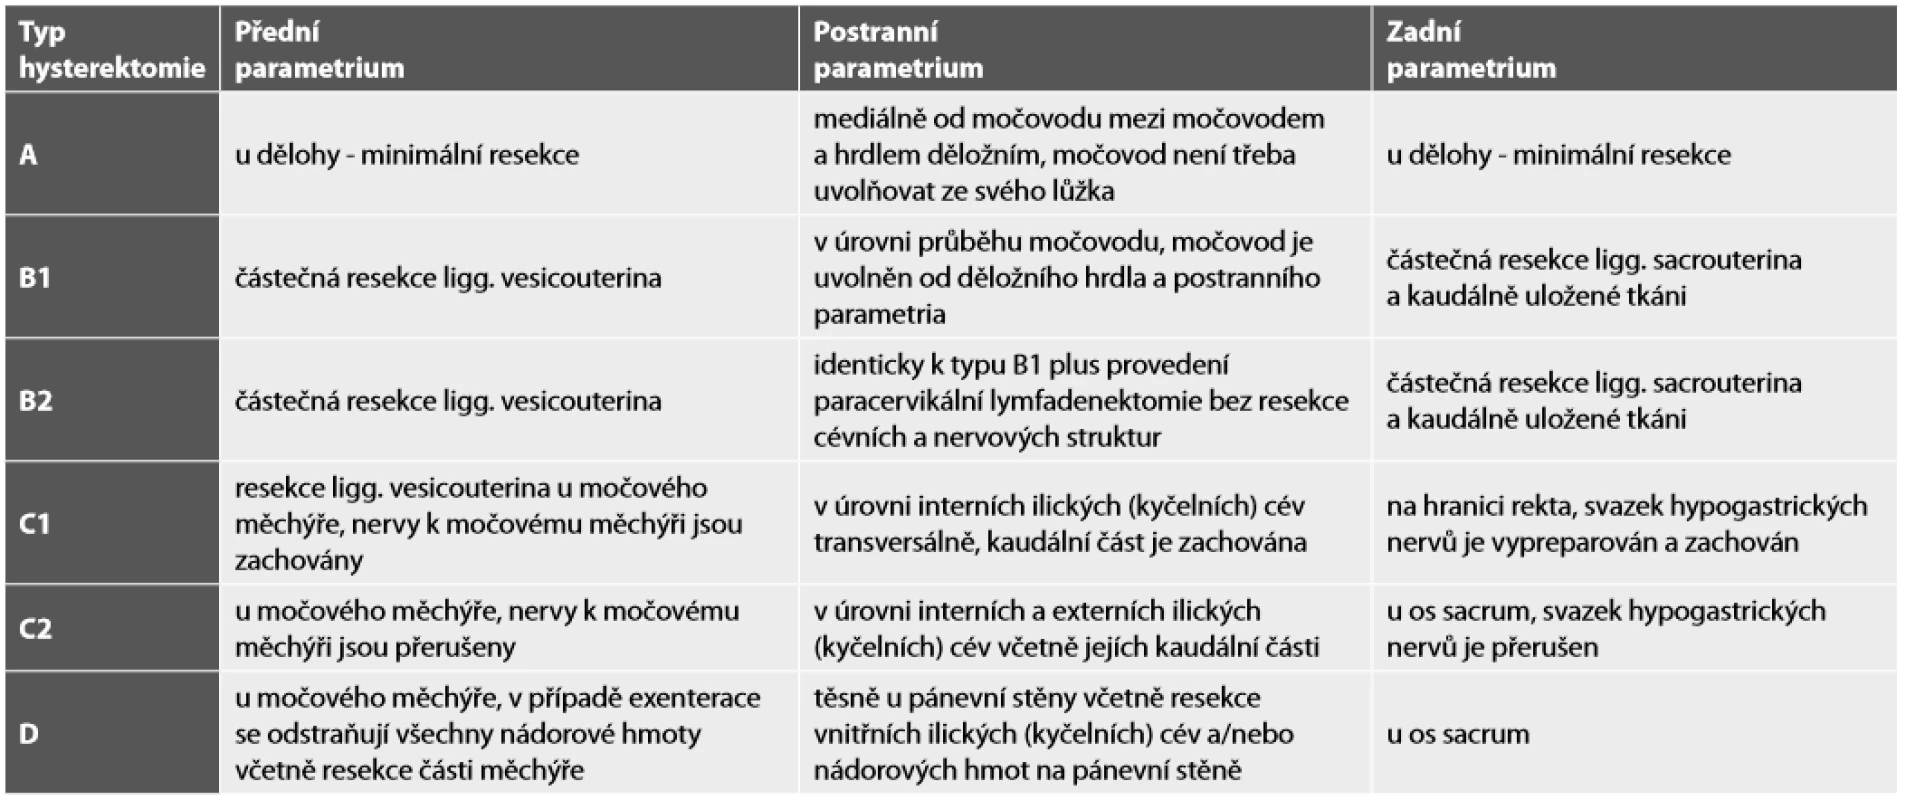 Typy radikální hysterektomie na základě klasifikace podle Querleu-Morrow (9).